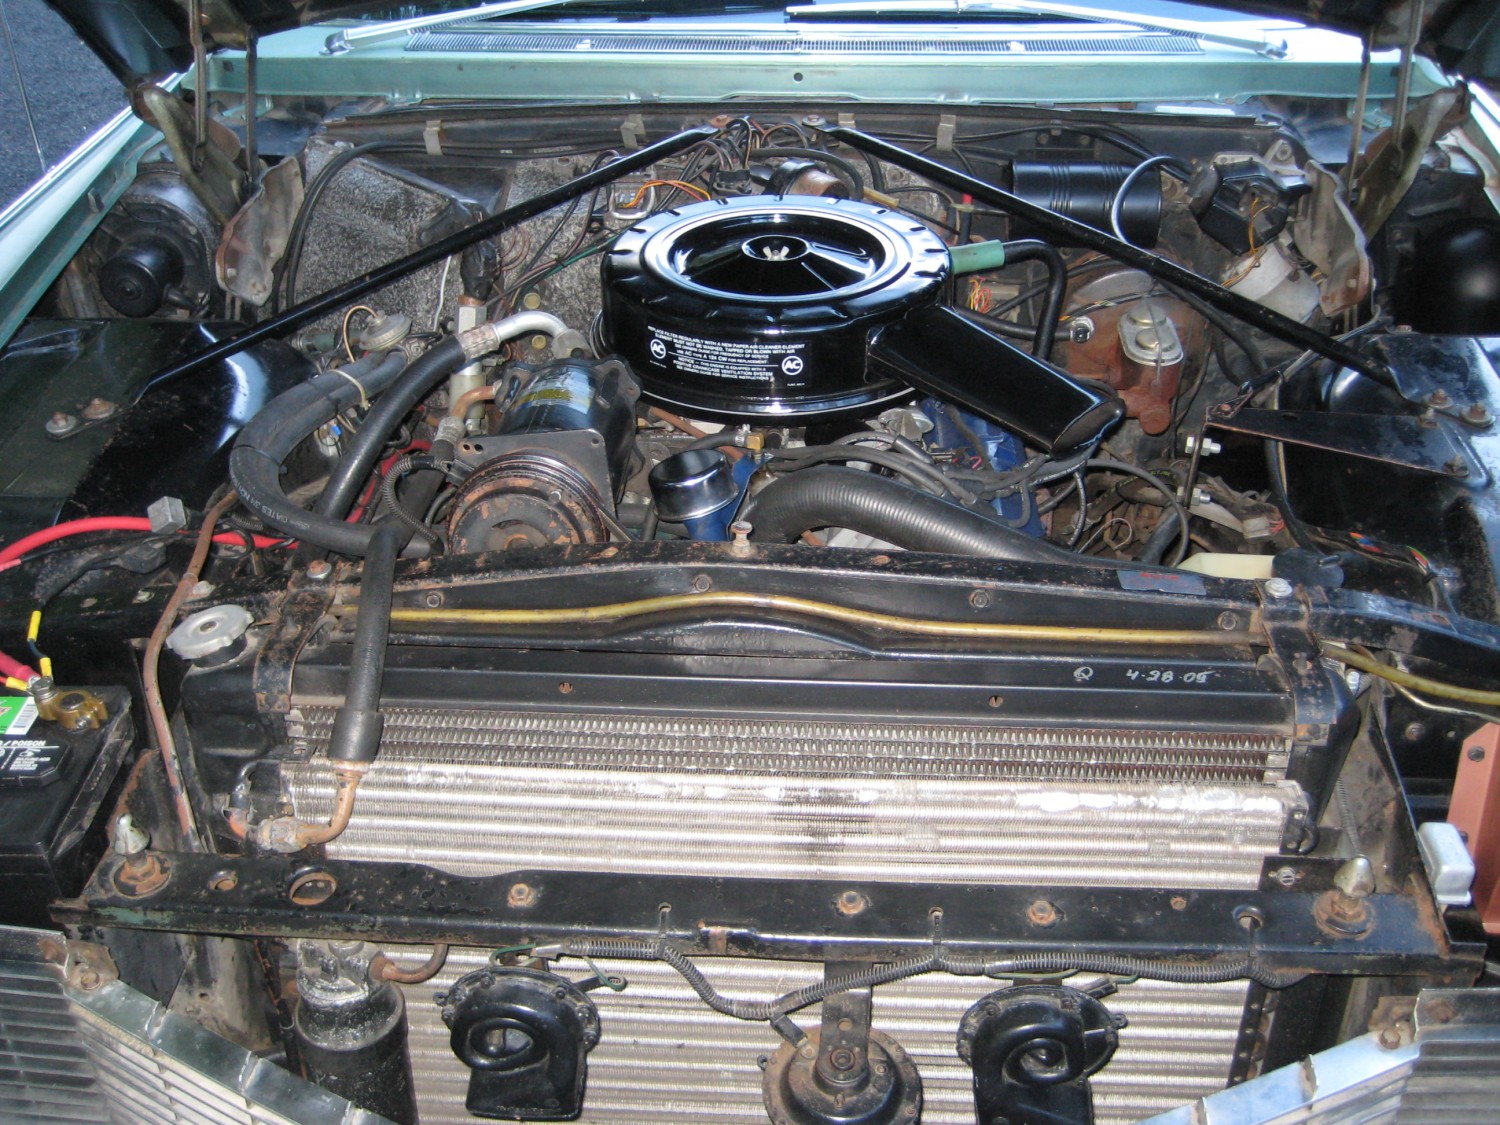 1965 Cadillac Coupe De Ville